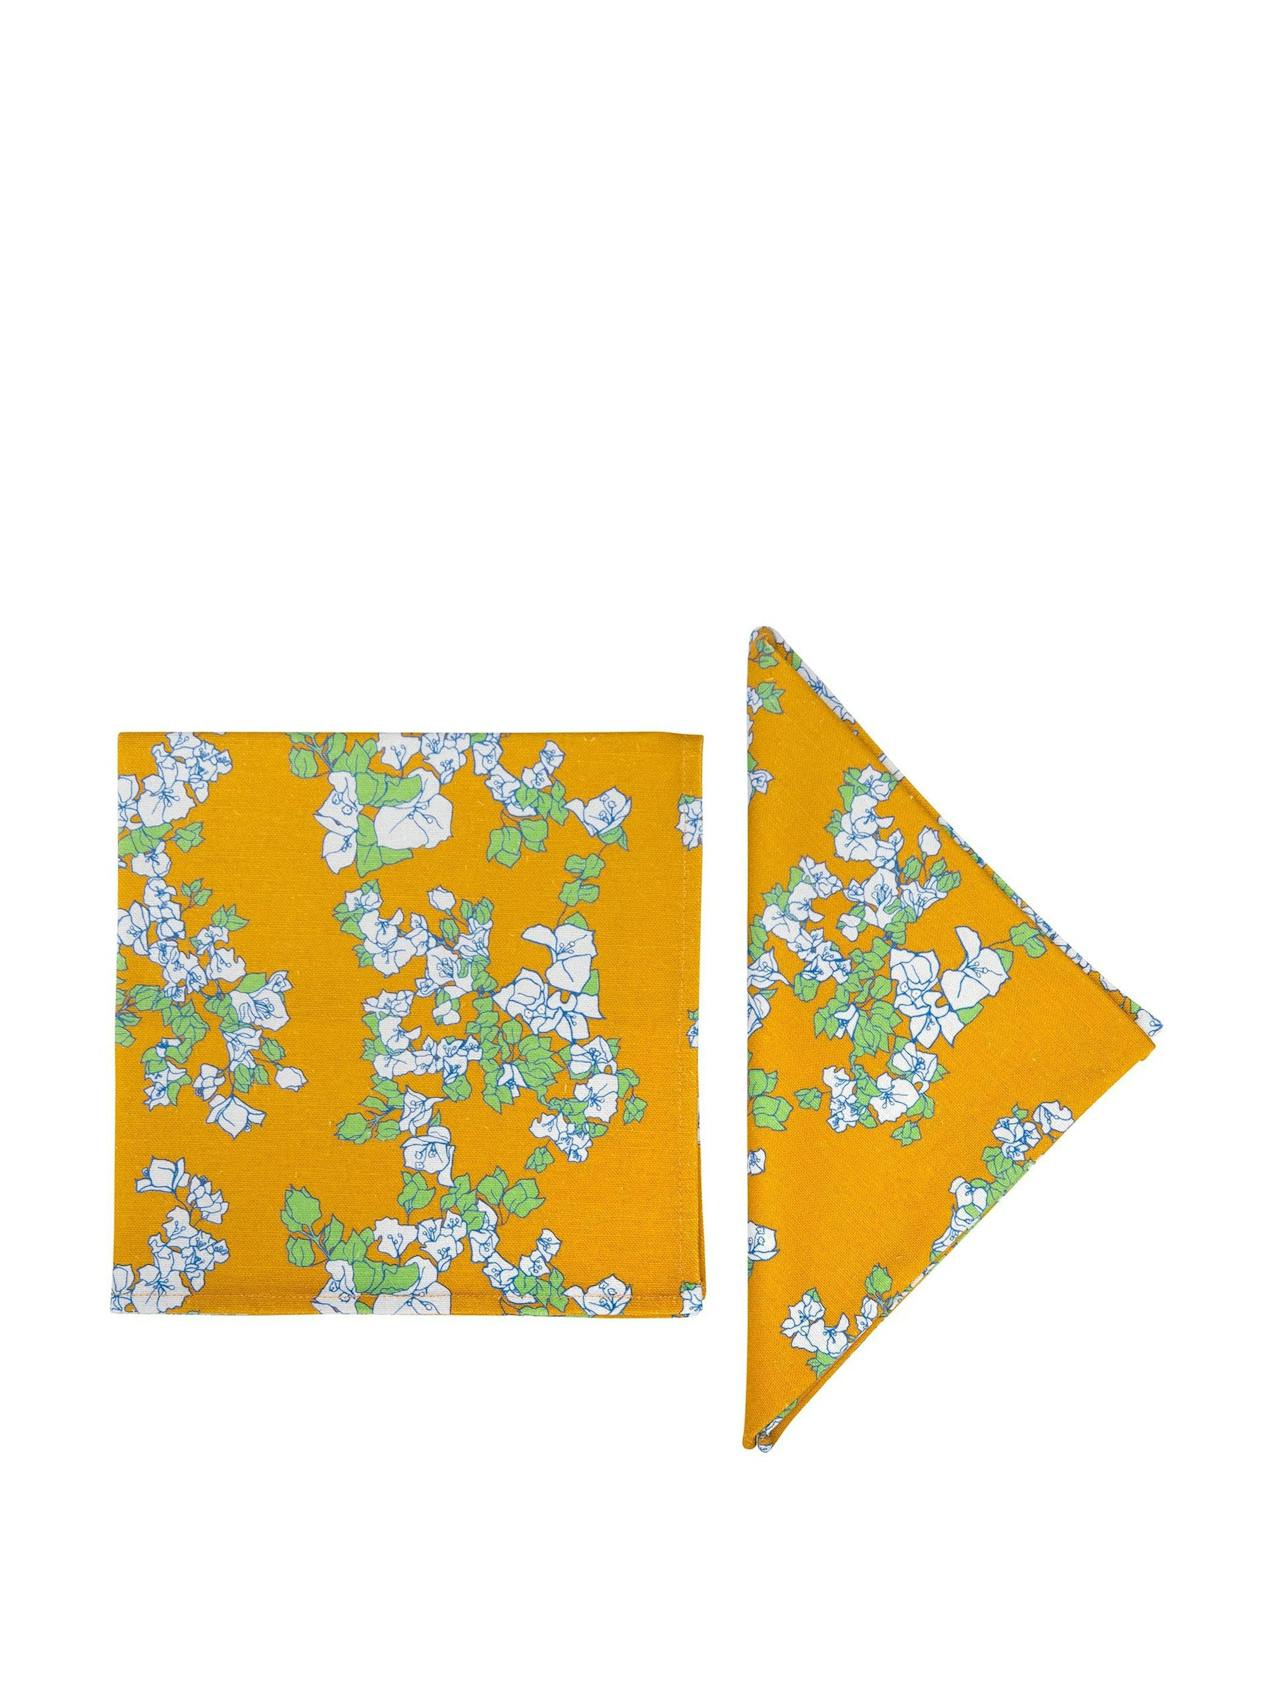 Saffron yellow napkins, set of 2